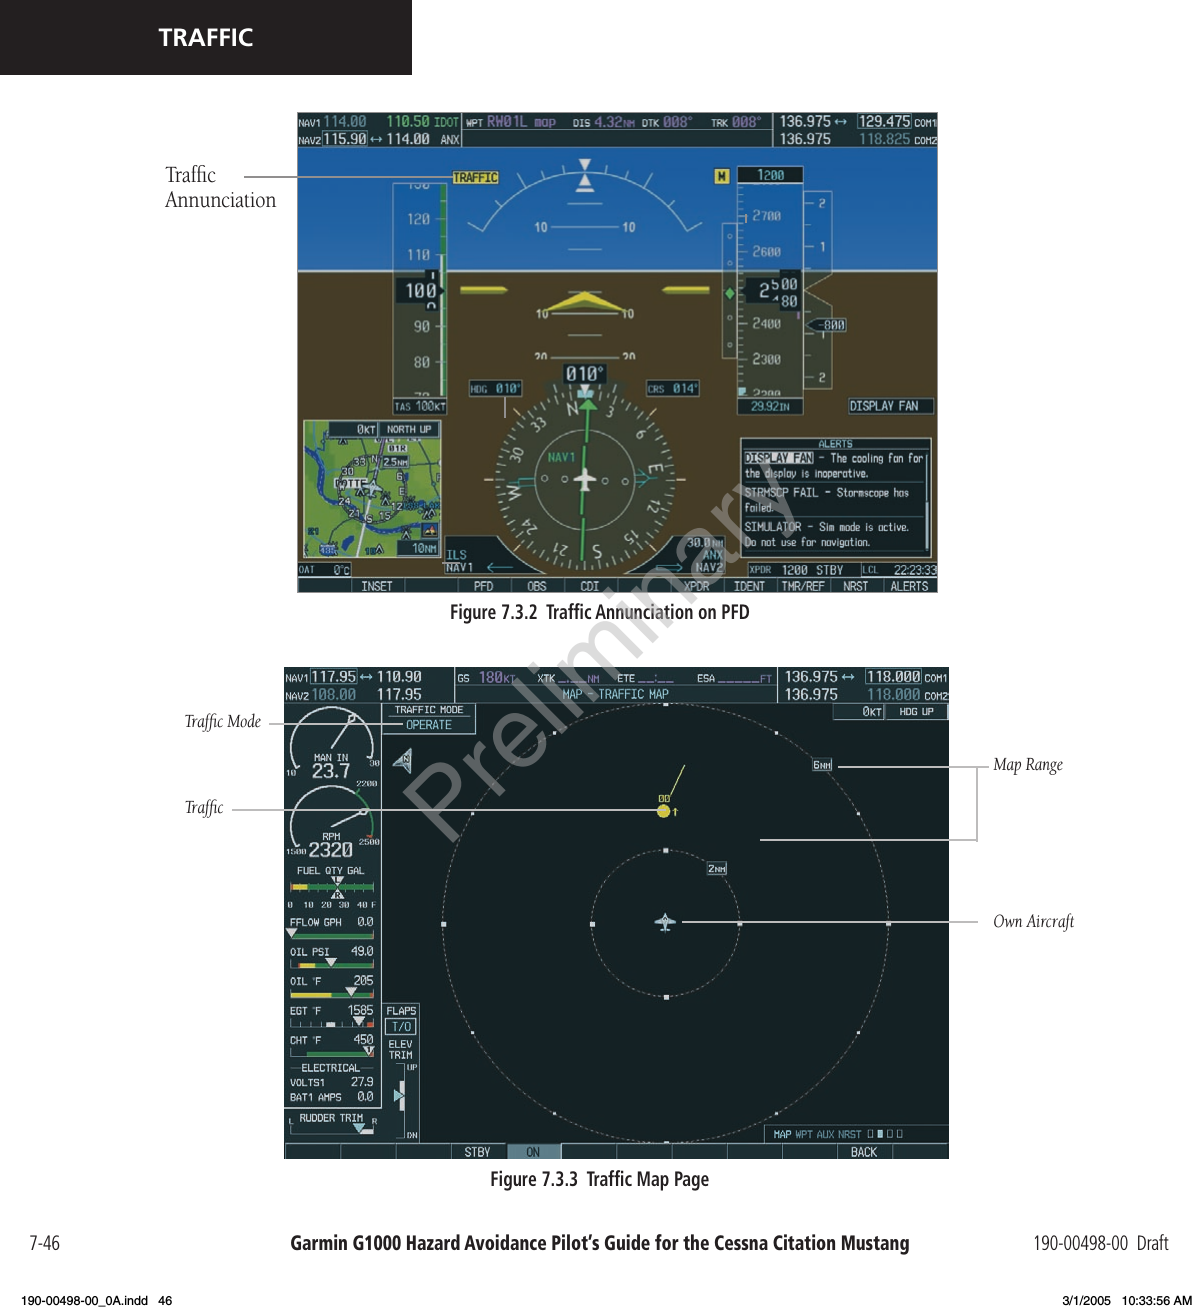 Garmin G1000 Hazard Avoidance Pilot’s Guide for the Cessna Citation Mustang 190-00498-00  Draft7-46TRAFFICFigure 7.3.2  Trafﬁc Annunciation on PFDTrafﬁc AnnunciationMap RangeOwn AircraftTrafﬁc ModeTrafﬁcFigure 7.3.3  Trafﬁc Map PagePreliminary190-00498-00_0A.indd   46 3/1/2005   10:33:56 AM